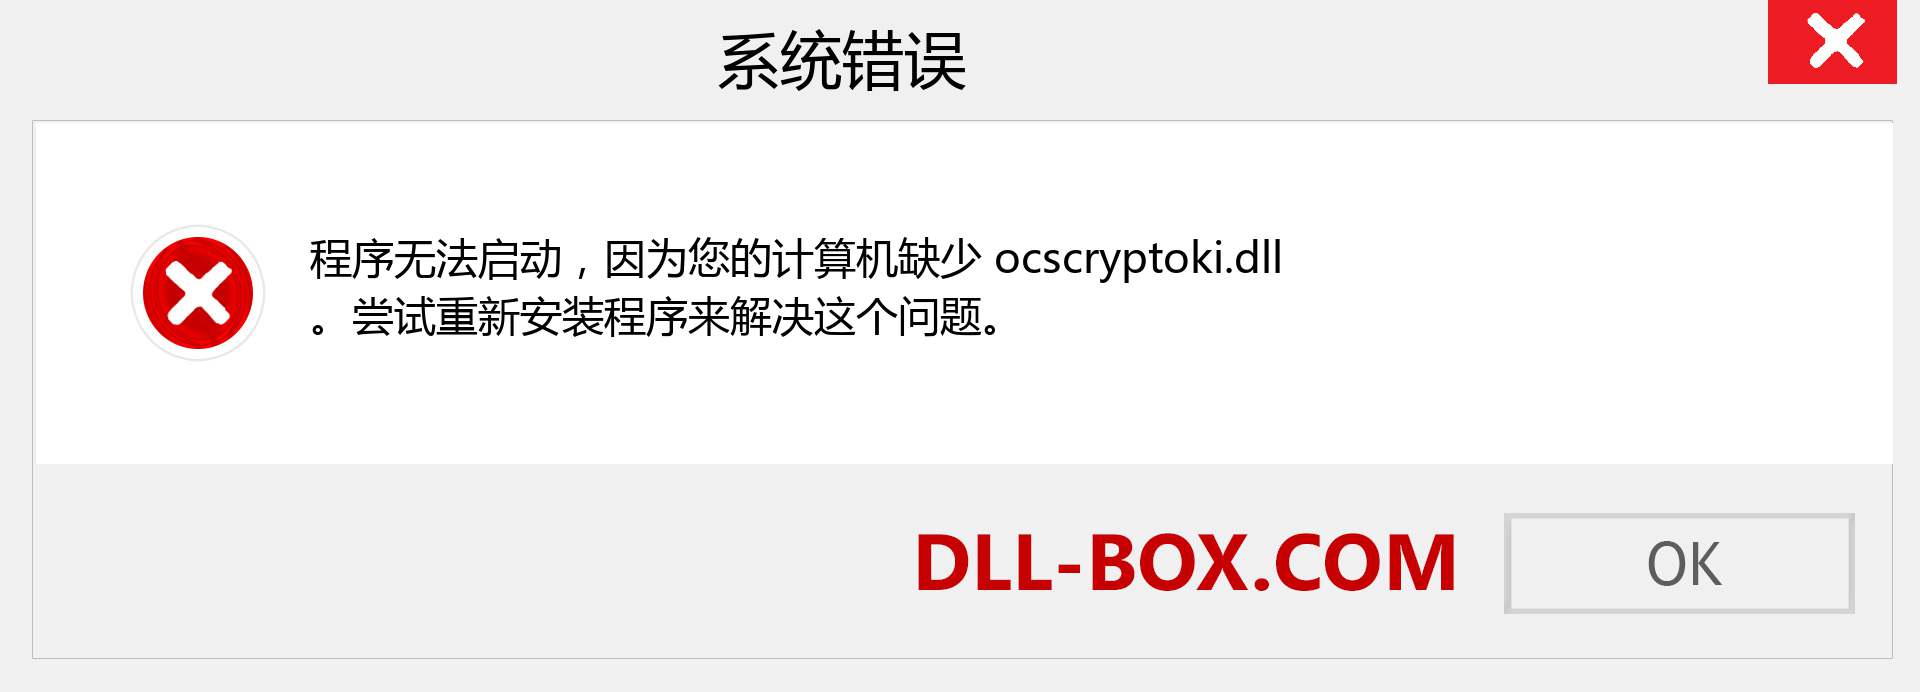 ocscryptoki.dll 文件丢失？。 适用于 Windows 7、8、10 的下载 - 修复 Windows、照片、图像上的 ocscryptoki dll 丢失错误